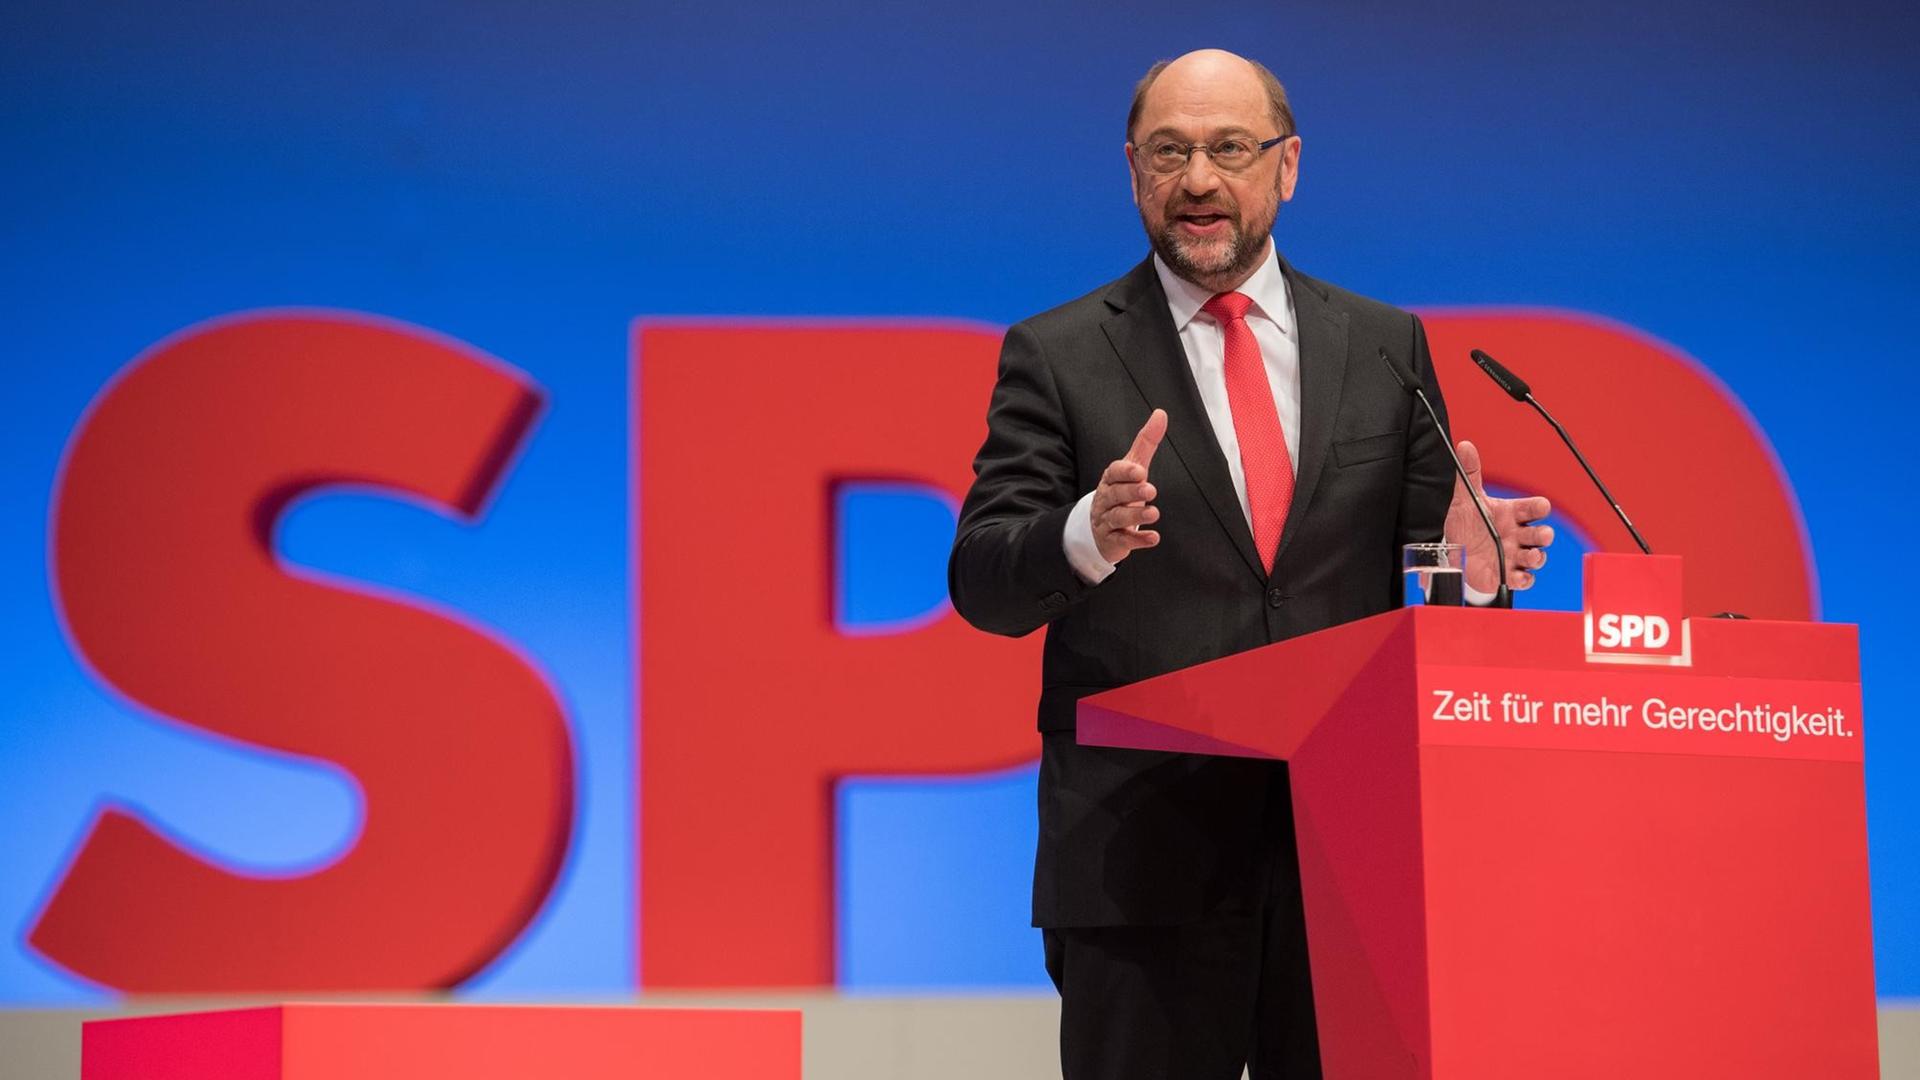 Der SPD-Kanzlerkandidat und Parteivorsitzende, Martin Schulz, spricht am 25.06.2017 in Dortmund beim SPD-Sonderparteitag vor den Delegierten.